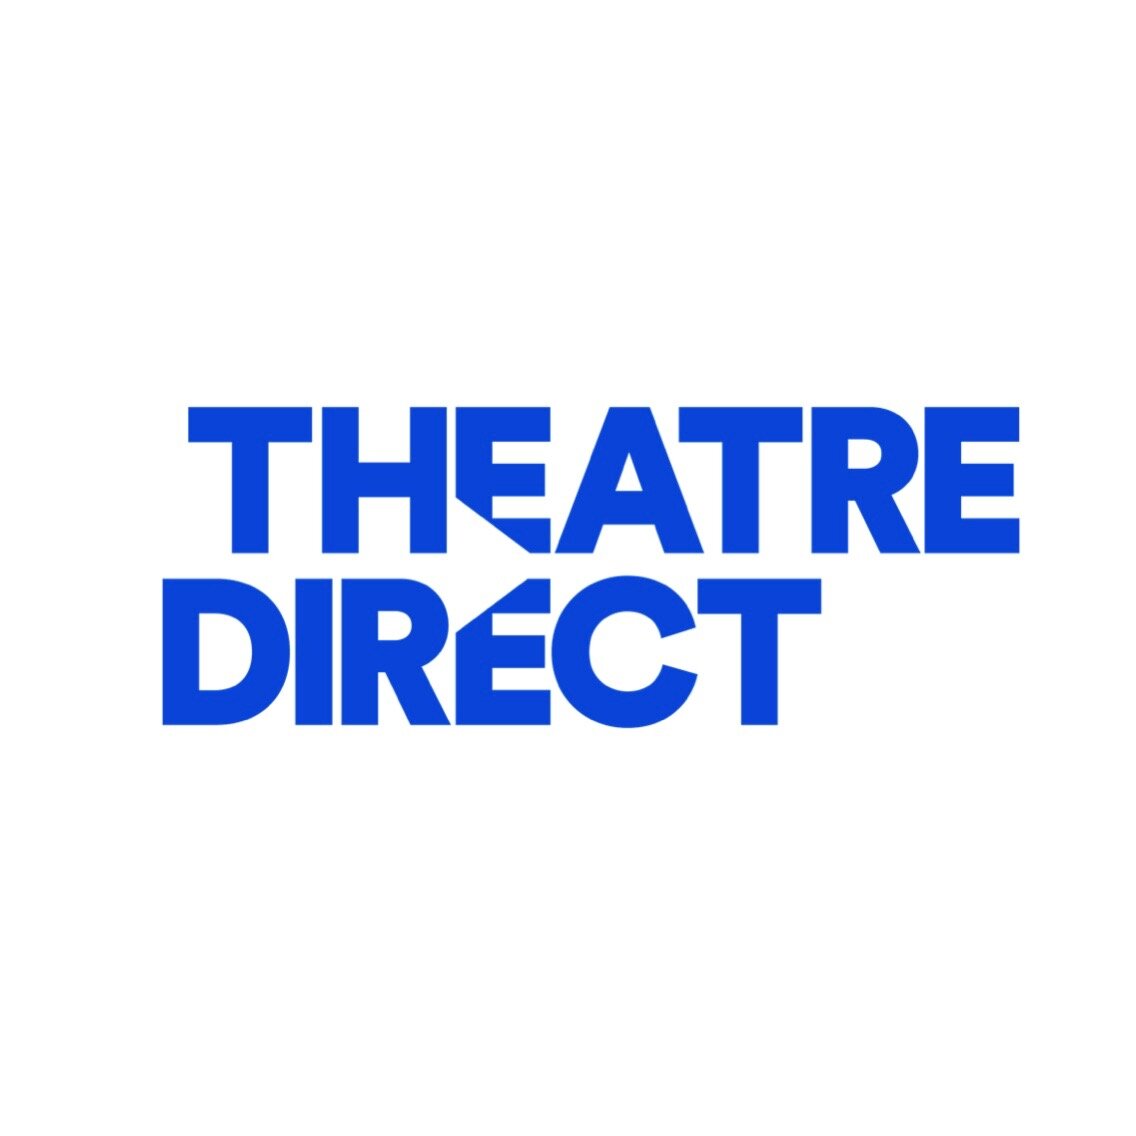 Theatre direct